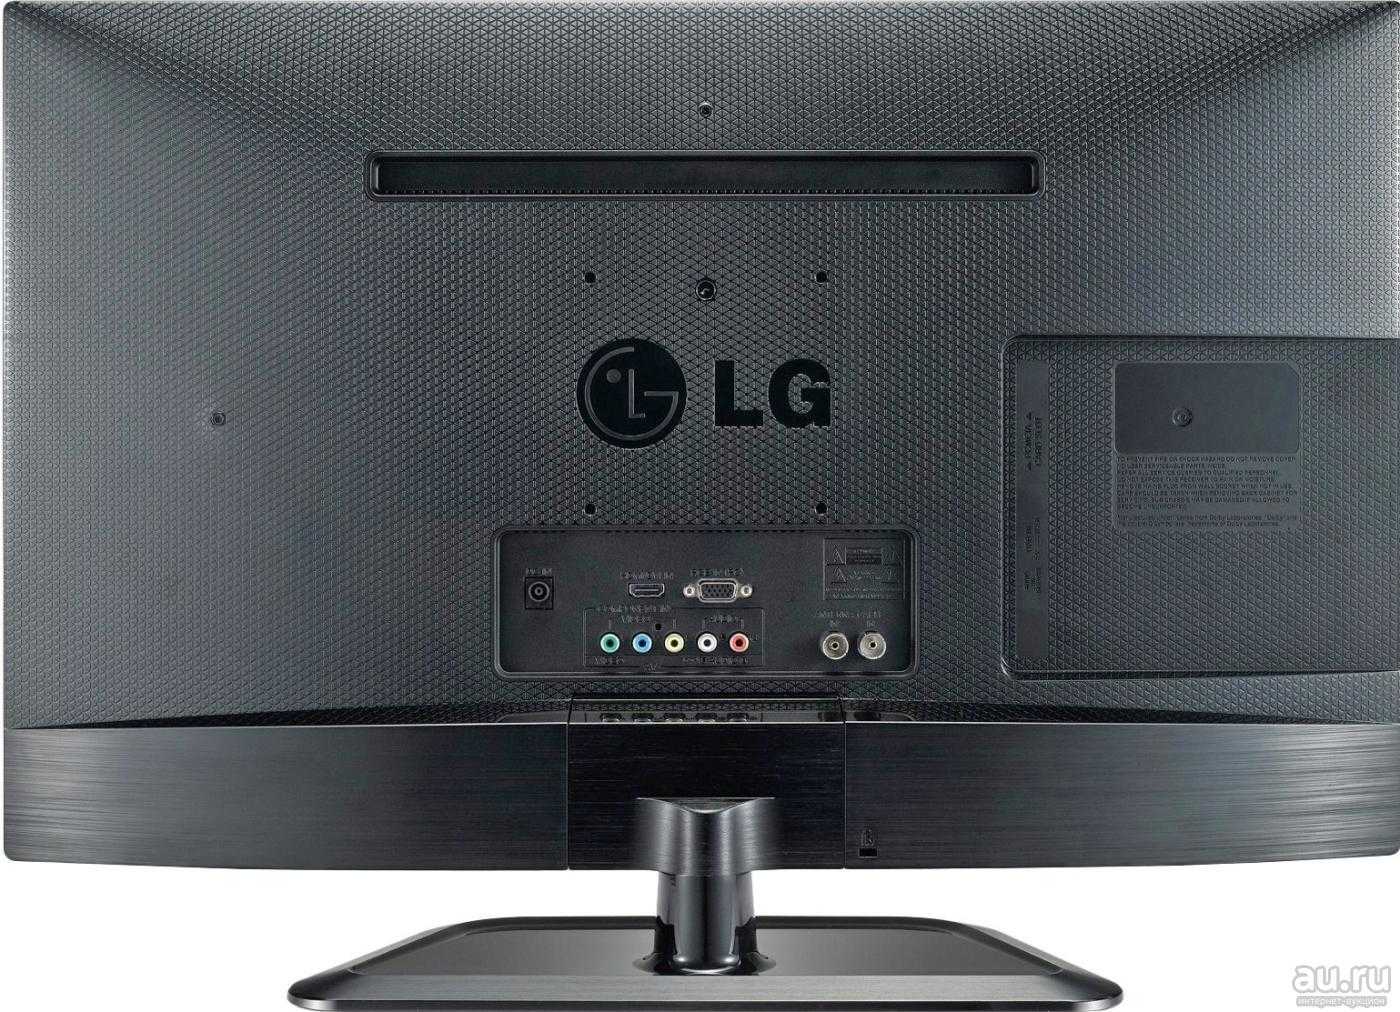 Телевизор LG 26LN450U - подробные характеристики обзоры видео фото Цены в интернет-магазинах где можно купить телевизор LG 26LN450U